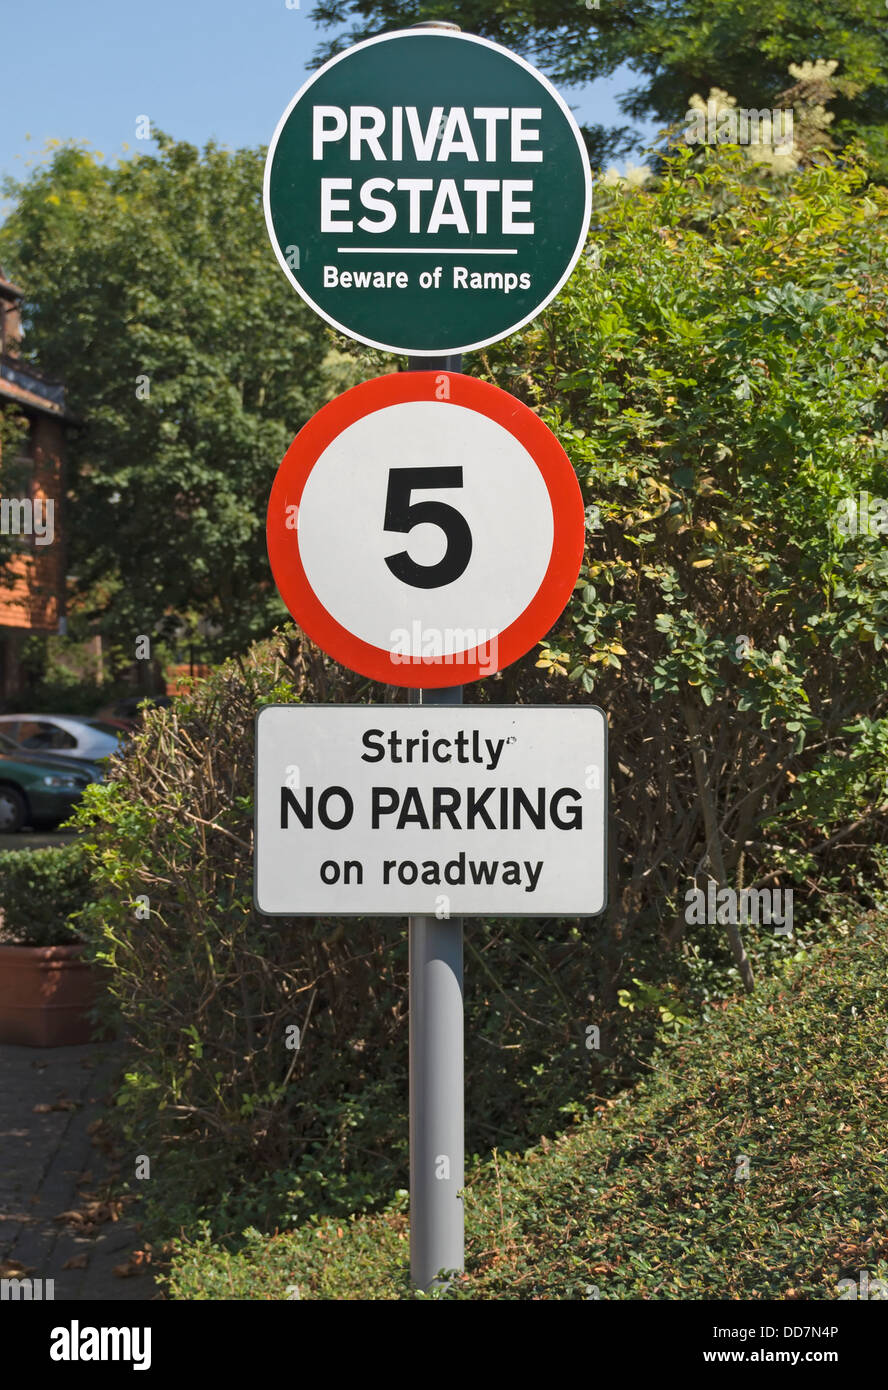 Indicazioni per il patrimonio privato, un 5mph limite di velocità, e strettamente no parcheggio, germano reale posto, Twickenham, middlesex, Inghilterra Foto Stock